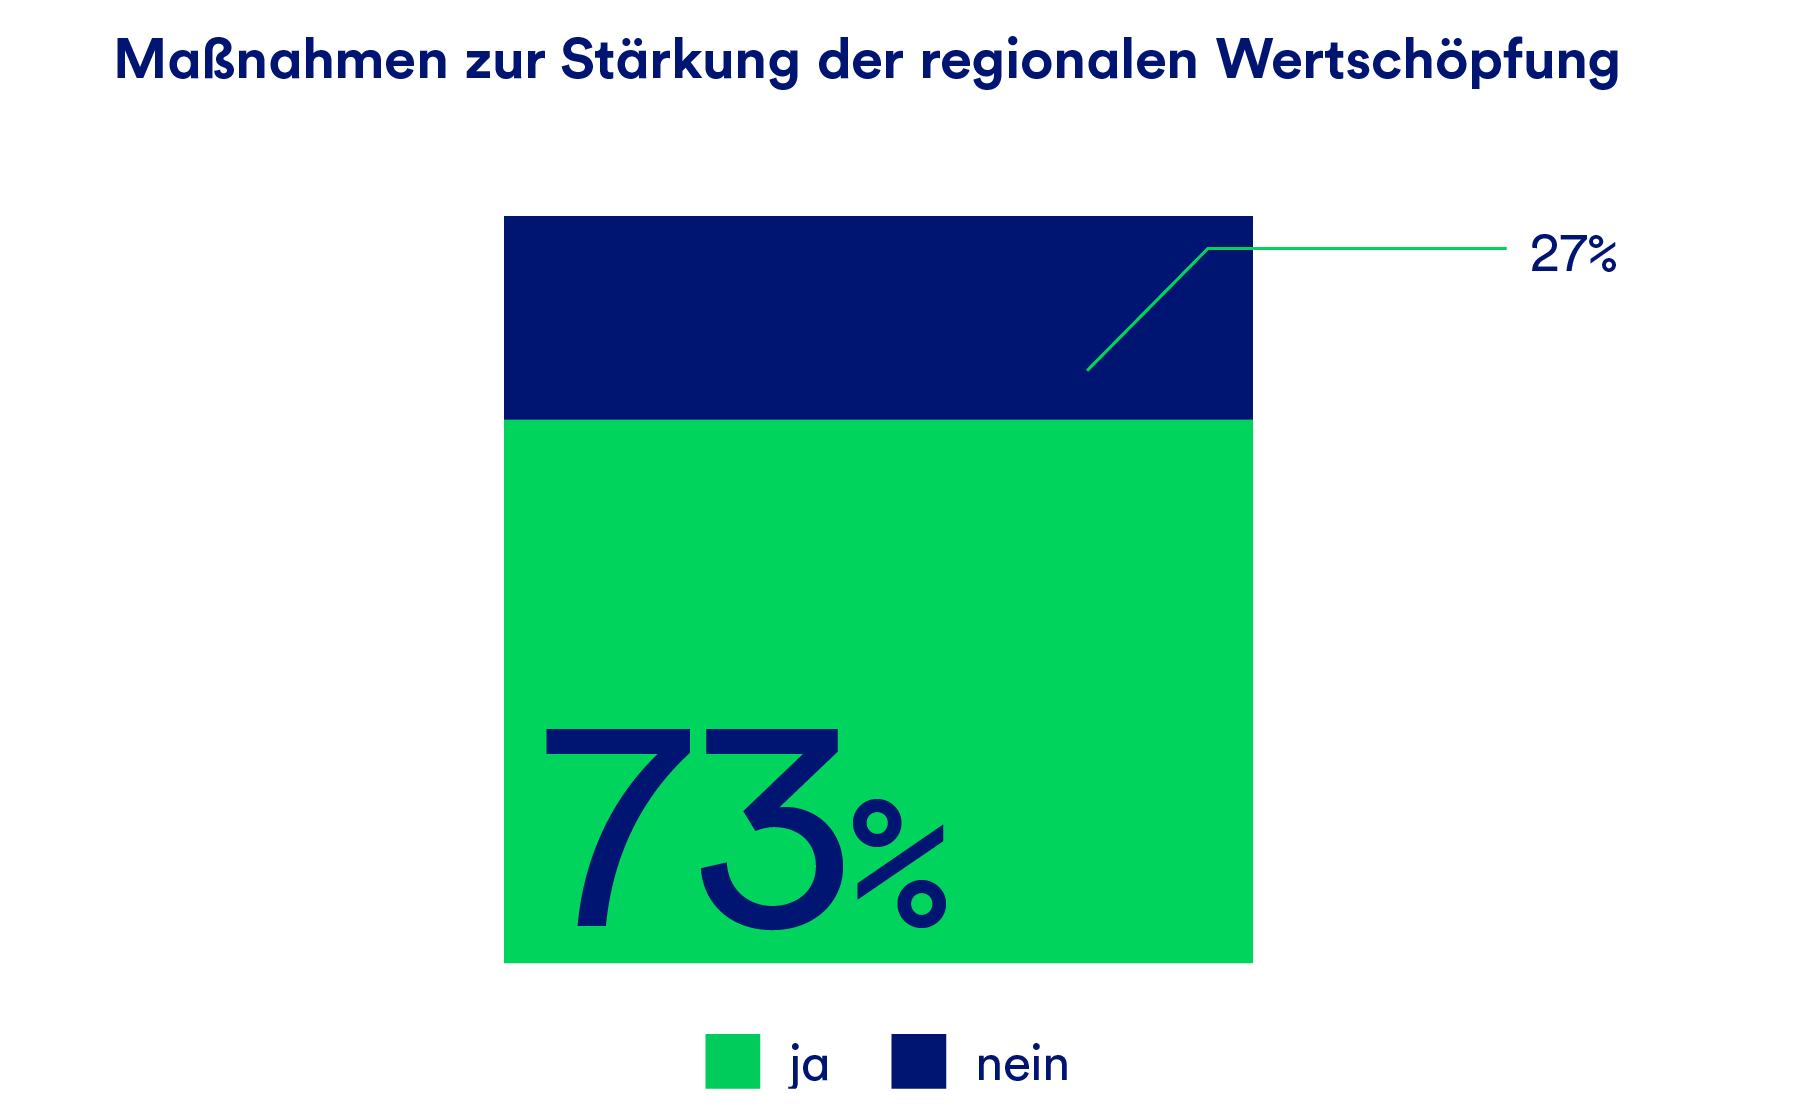 Eine Grafik, die in Prozent den Anteil der Unternehmen, die Maßnahmen zur Stärkung der regionalen Wertschöpfung umsetzen, angibt. 73% sagen ja.